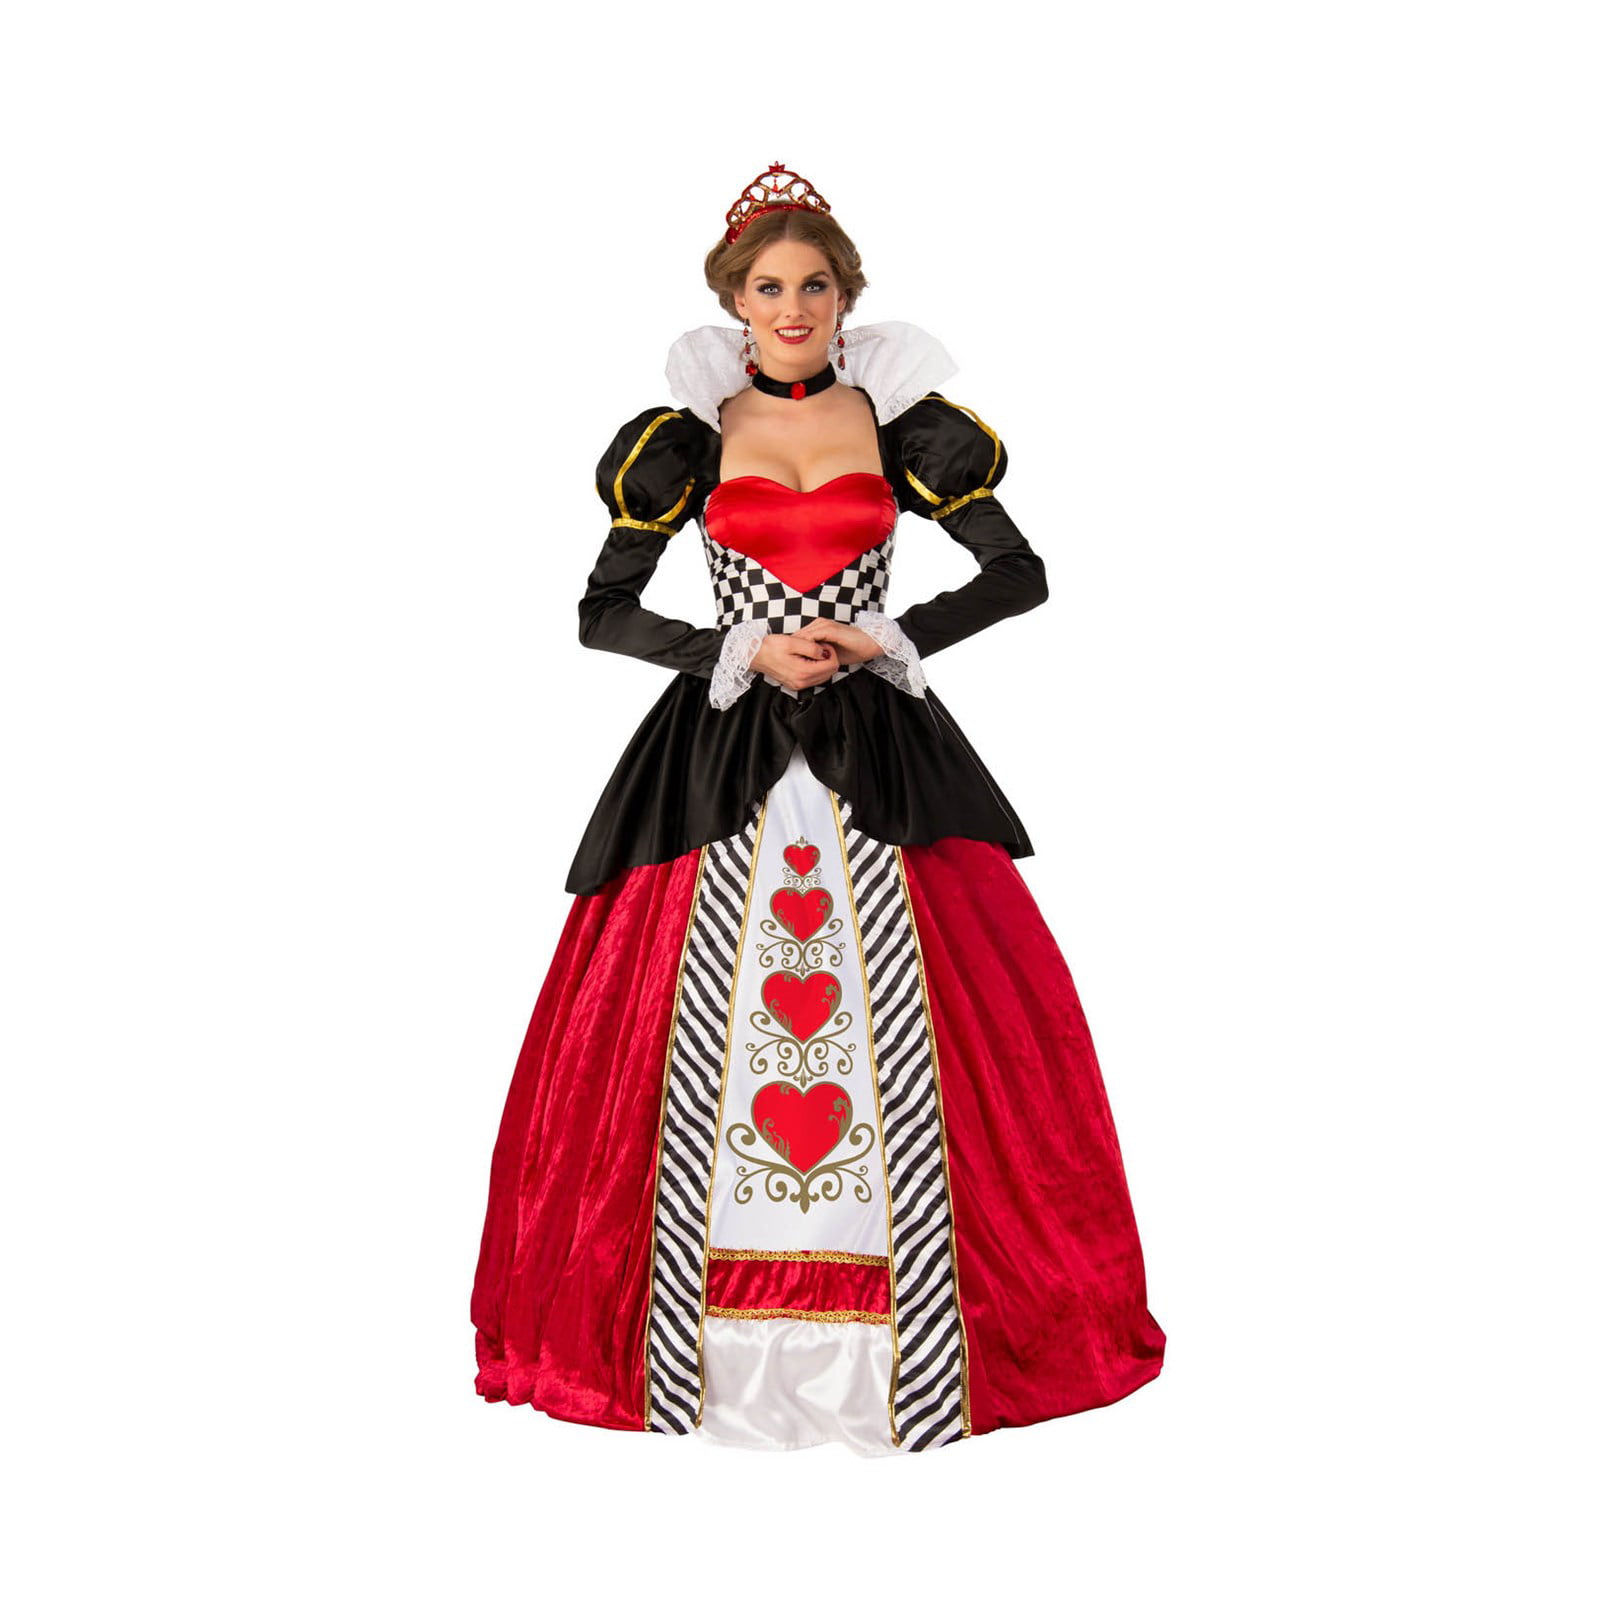 Elite Queen Of Hearts Adult Costume - Walmart.com - Walmart.com